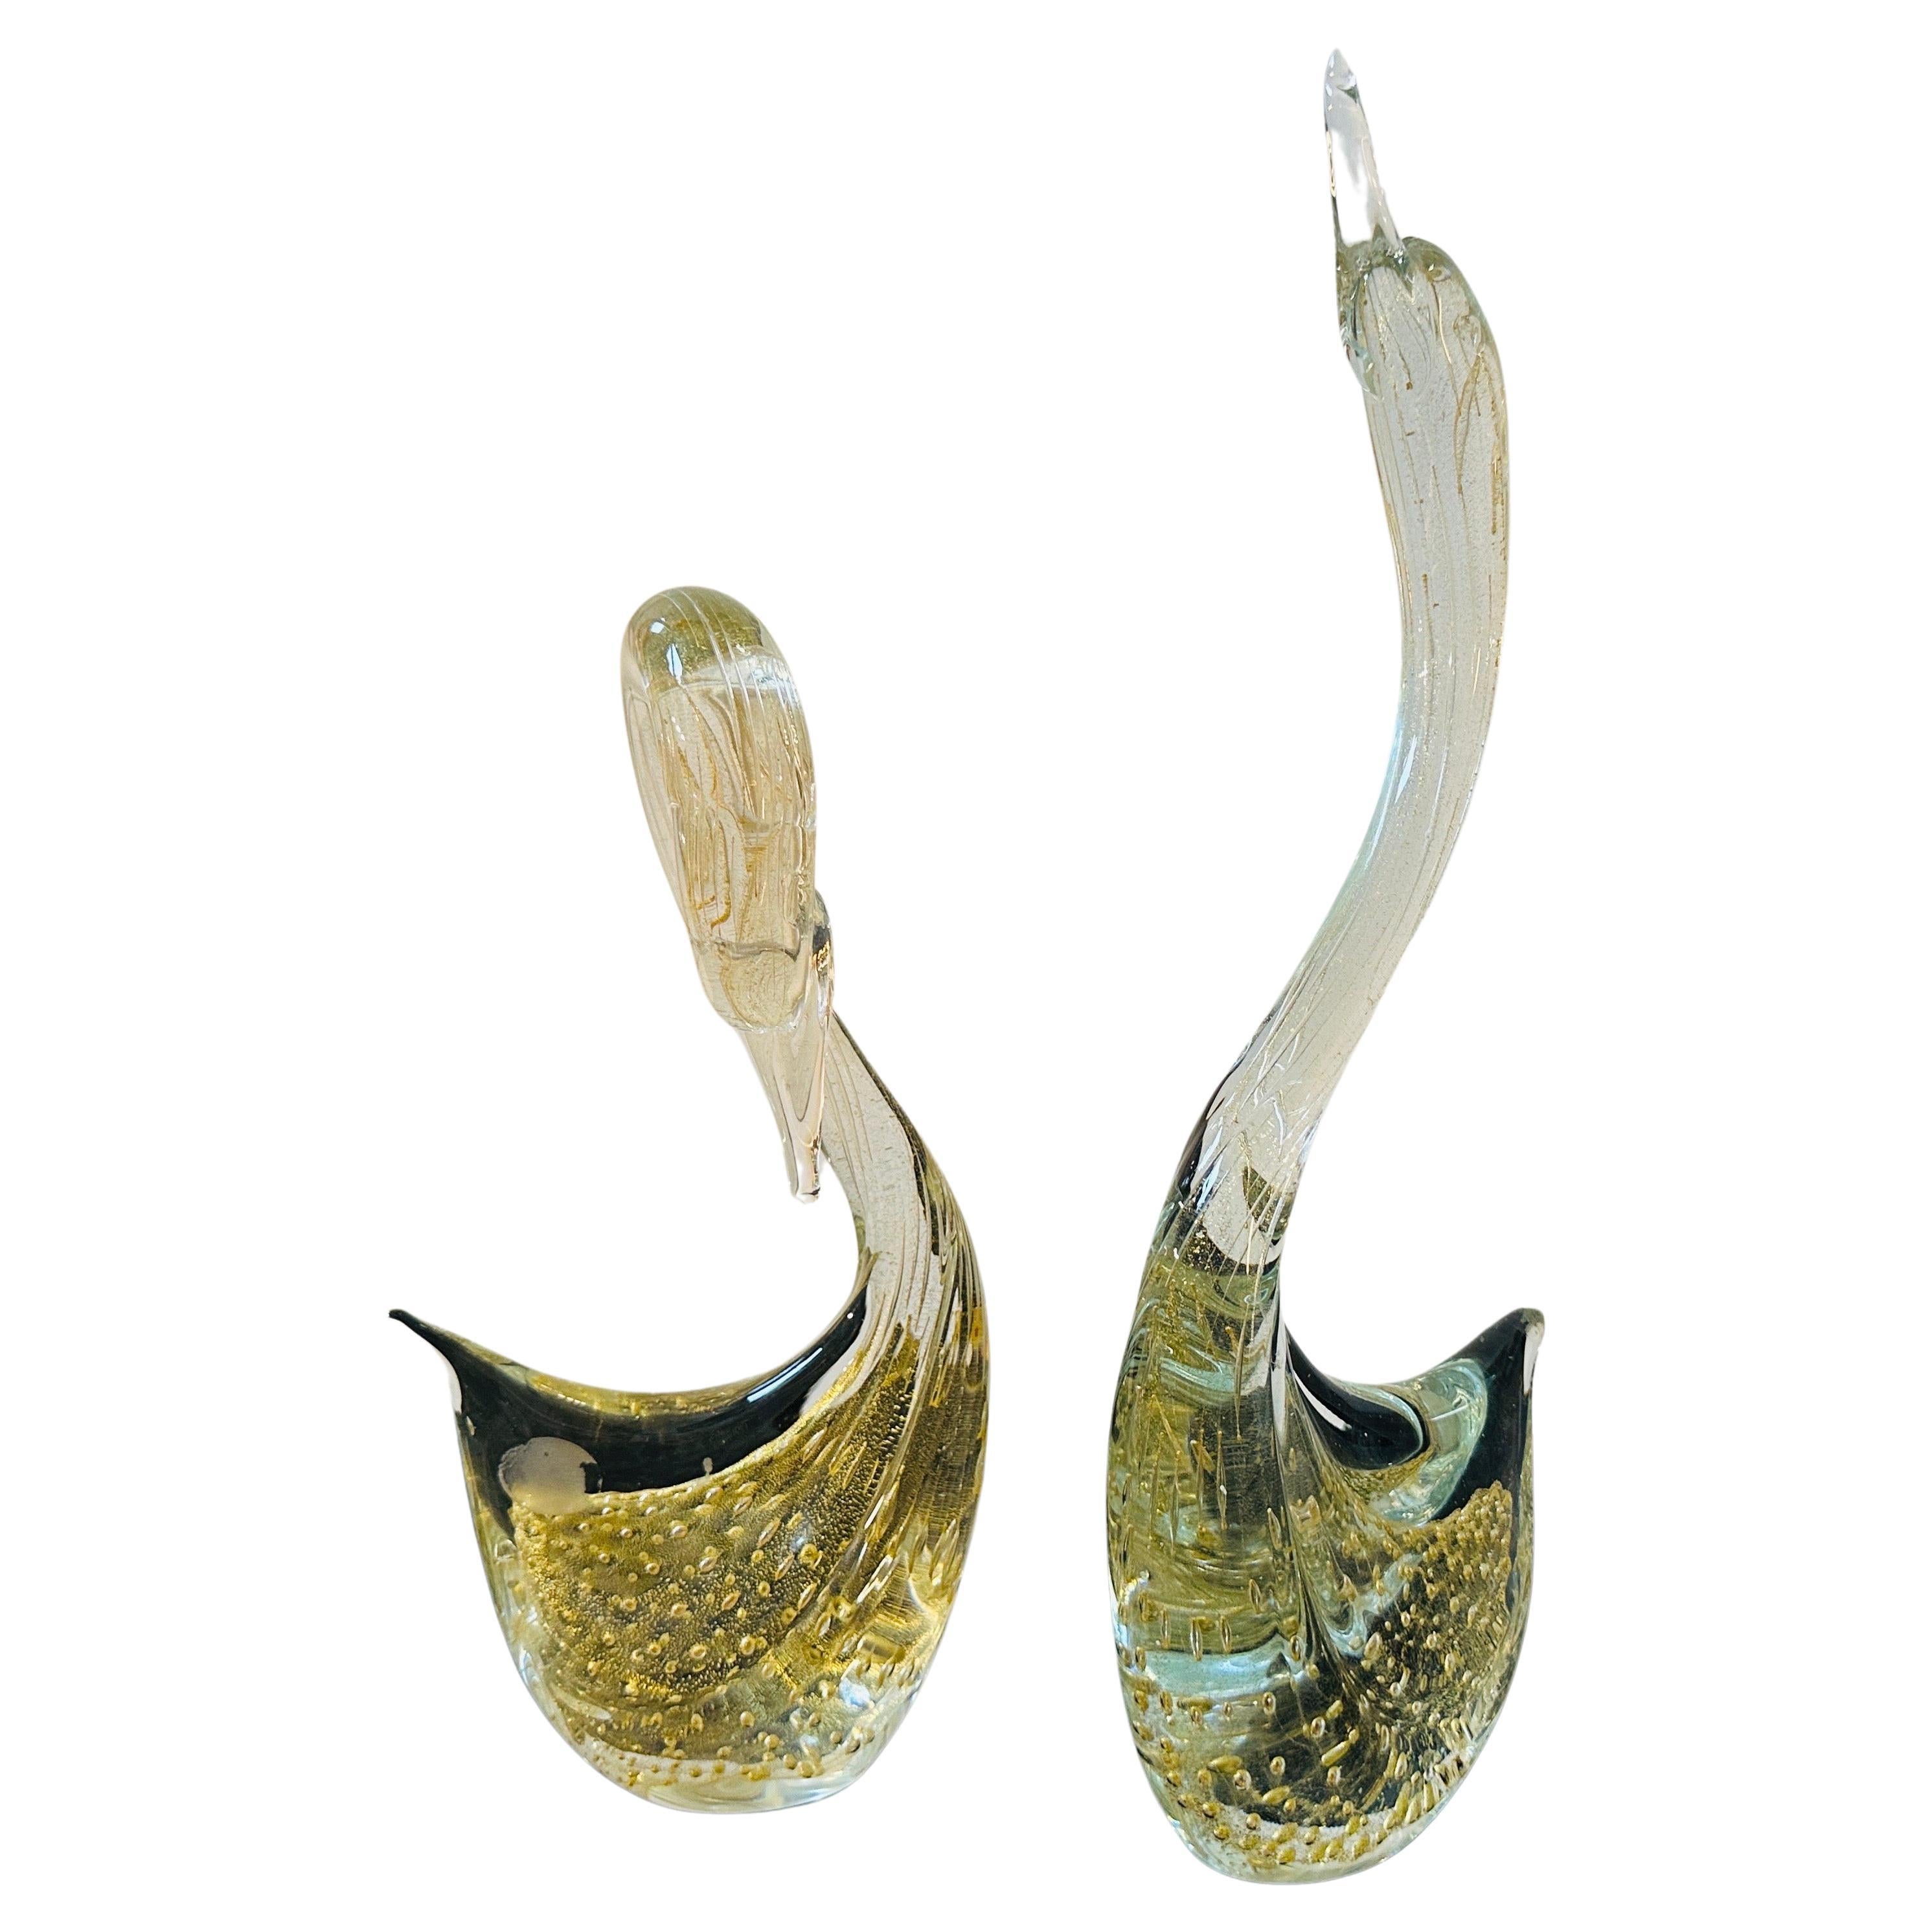 Deux sculptures de cygnes en verre de Murano clair et doré, datant des années 1960, sont une délicieuse représentation de l'art et de l'artisanat associés au verre de Murano. Les sculptures de cygnes incarnent l'élégance et la grâce de ces oiseaux